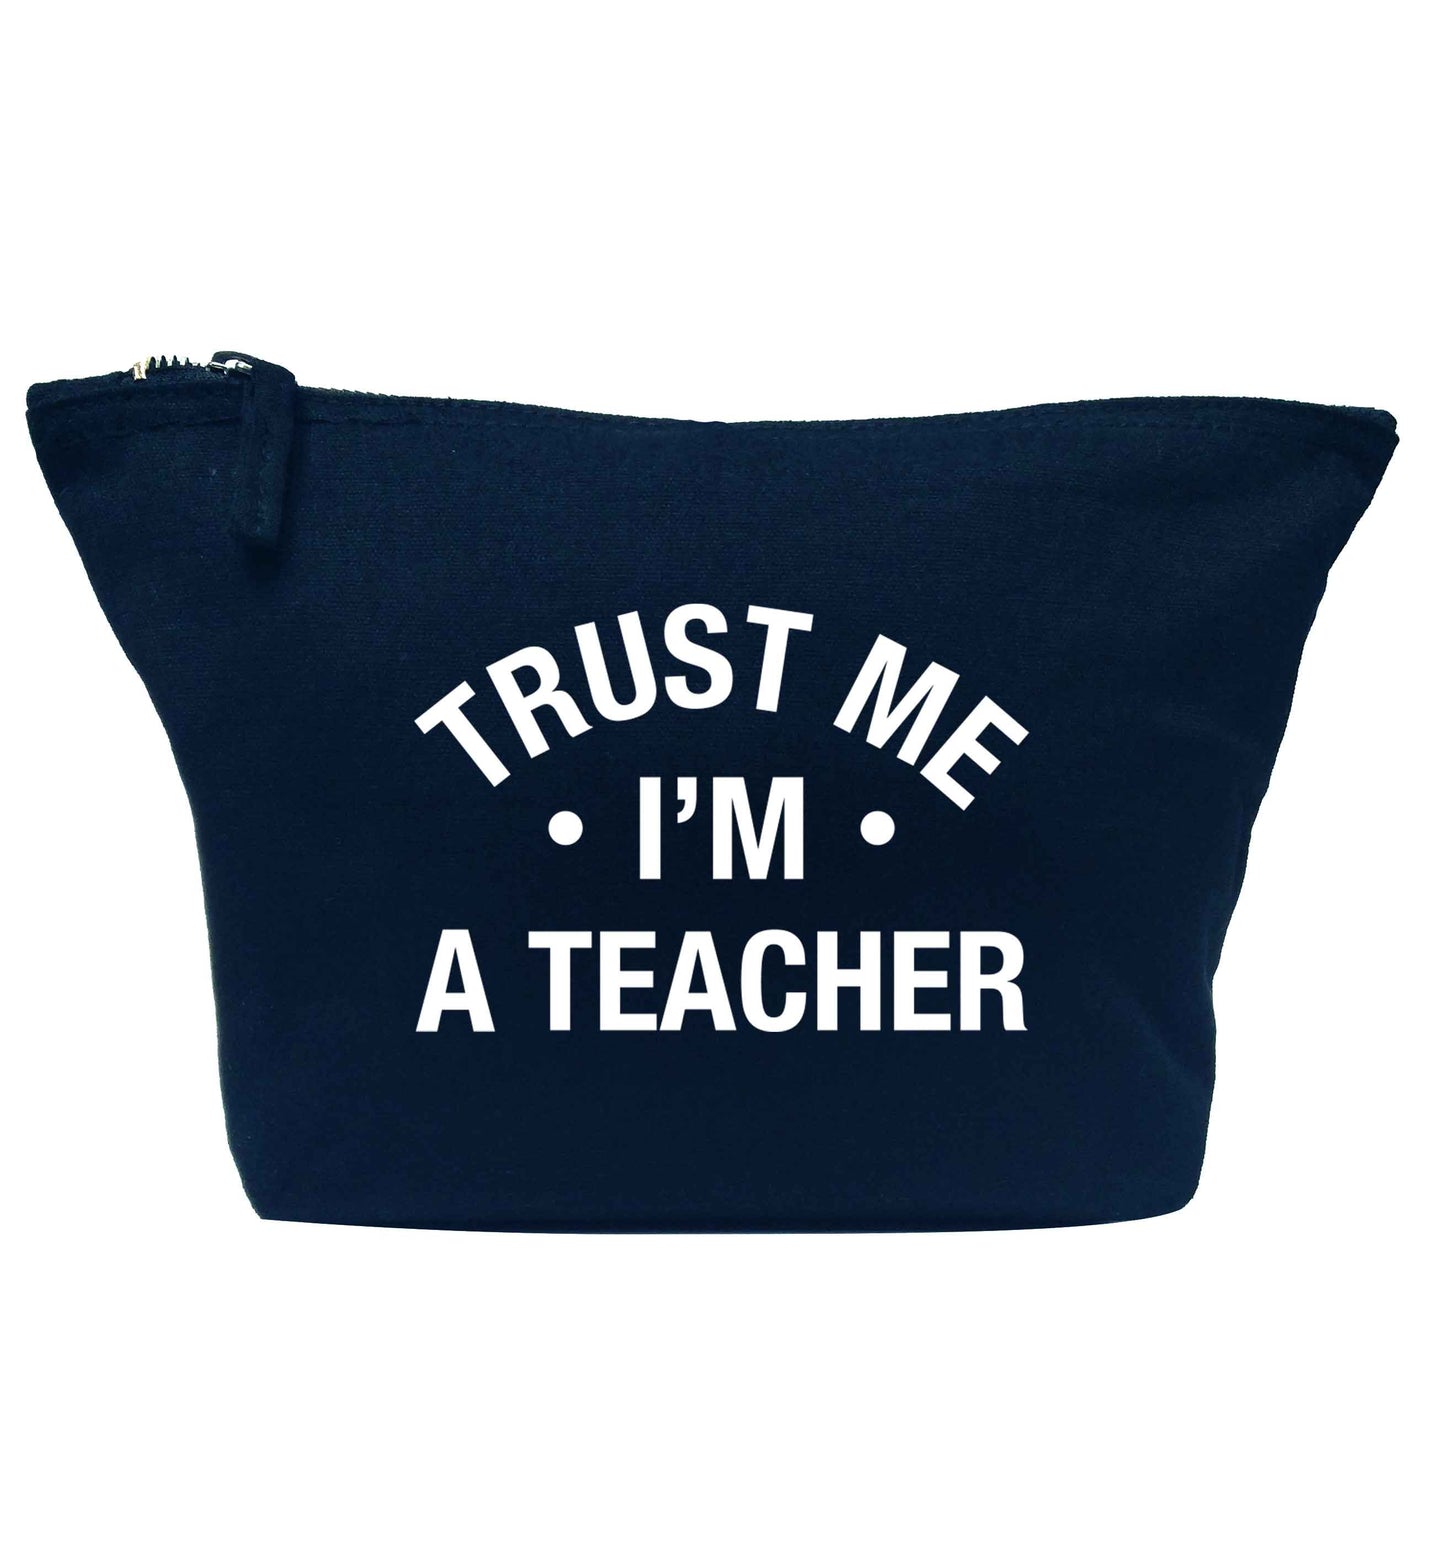 Trust me I'm a teacher navy makeup bag